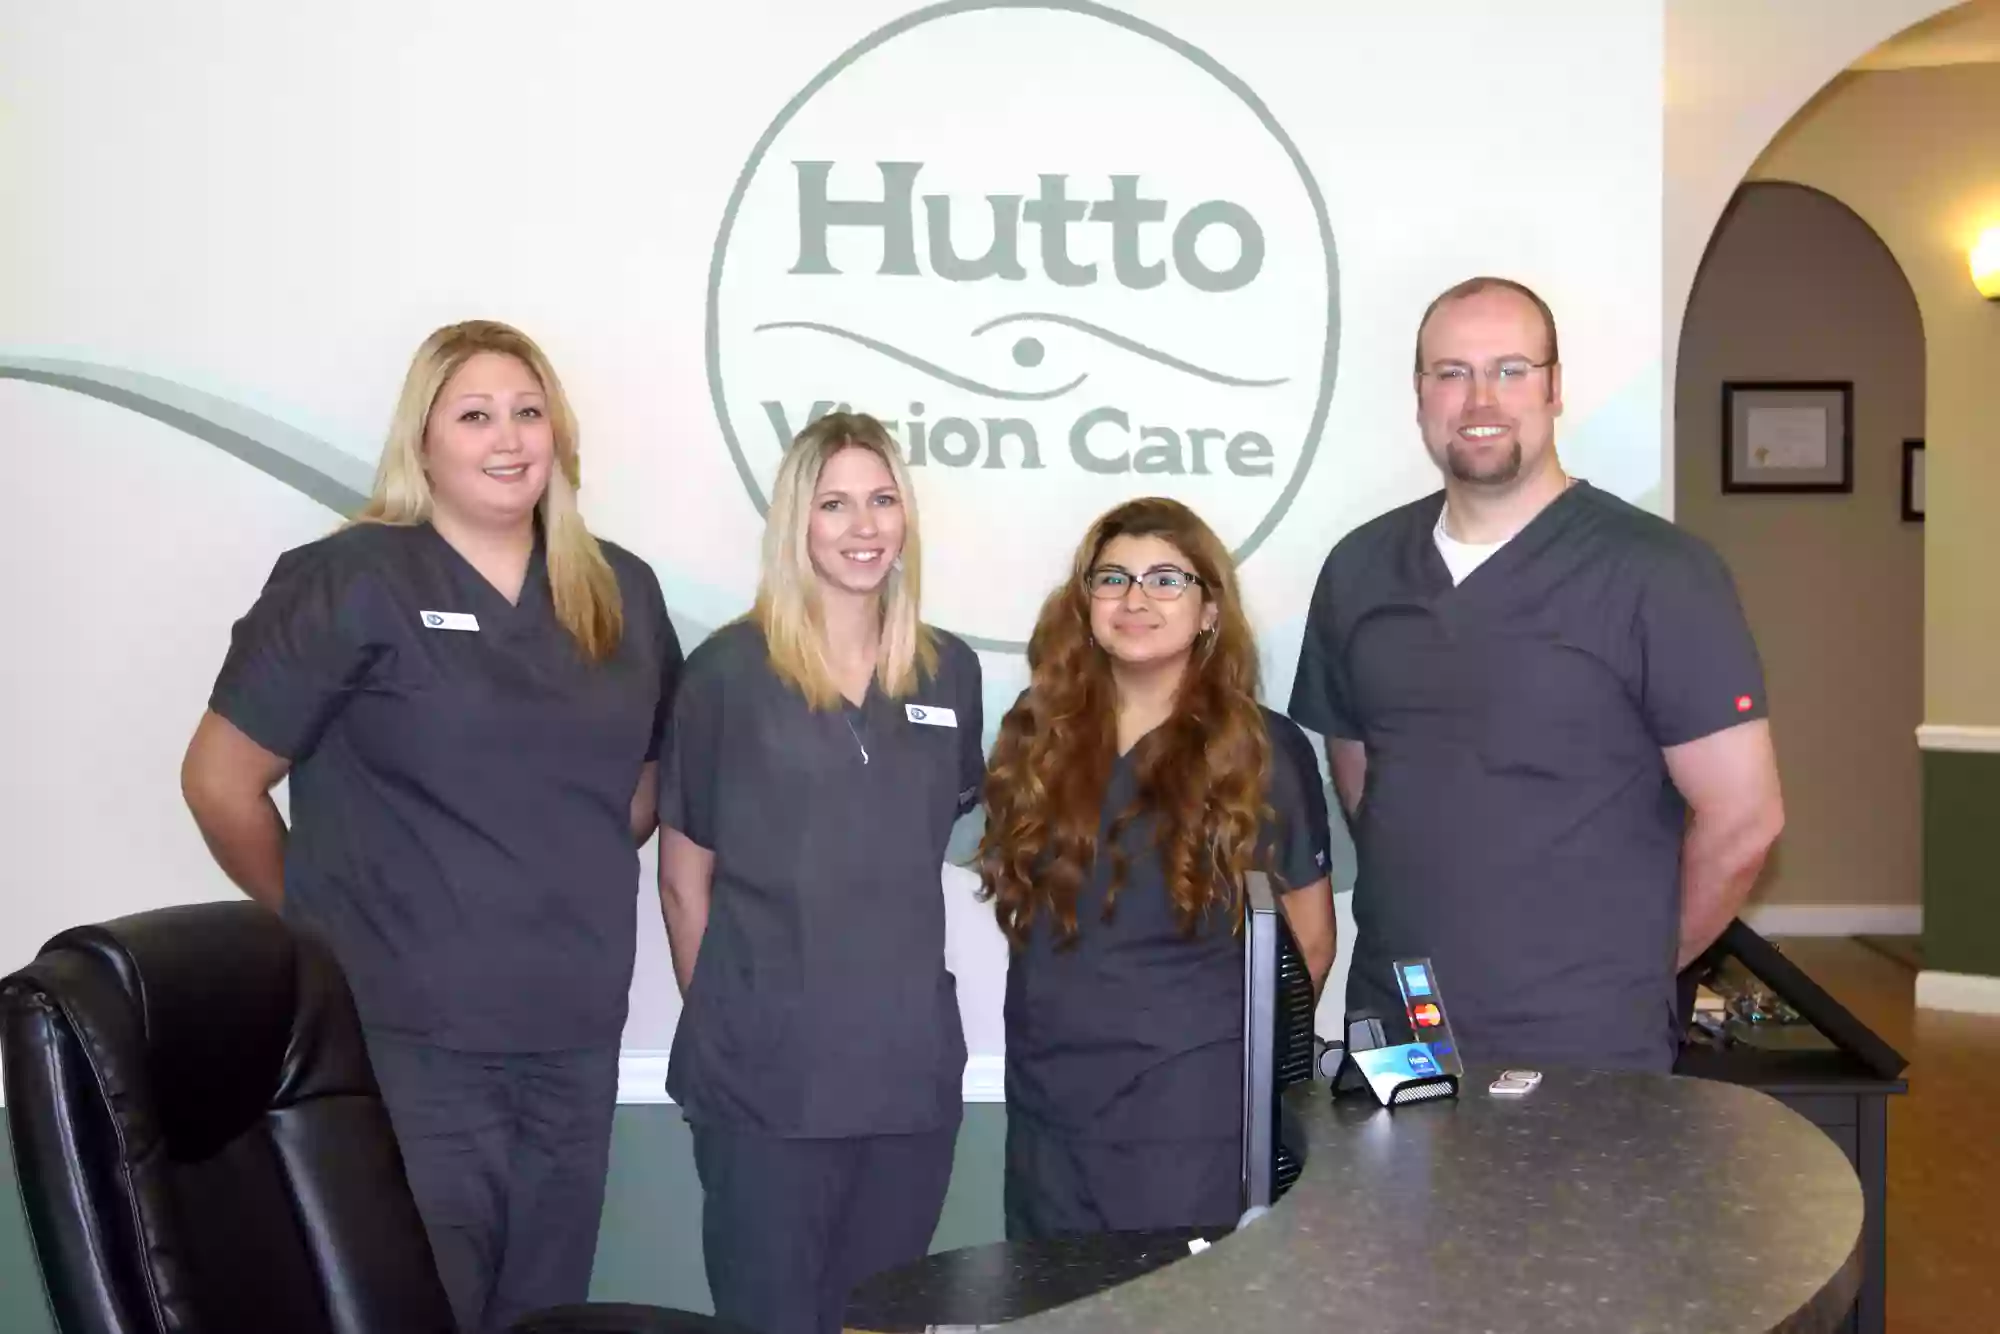 Hutto Vision Care